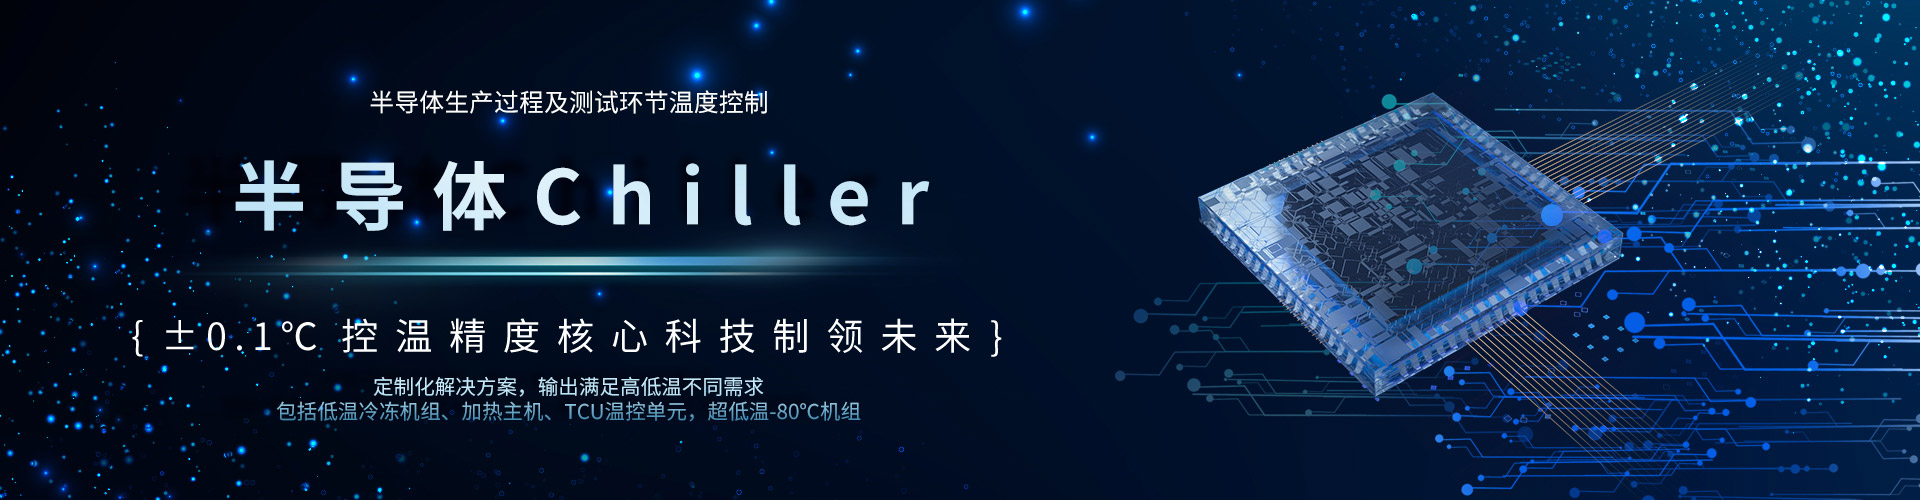 半导体Chiller-深圳市yd12300云顶线路机械有限公司官网